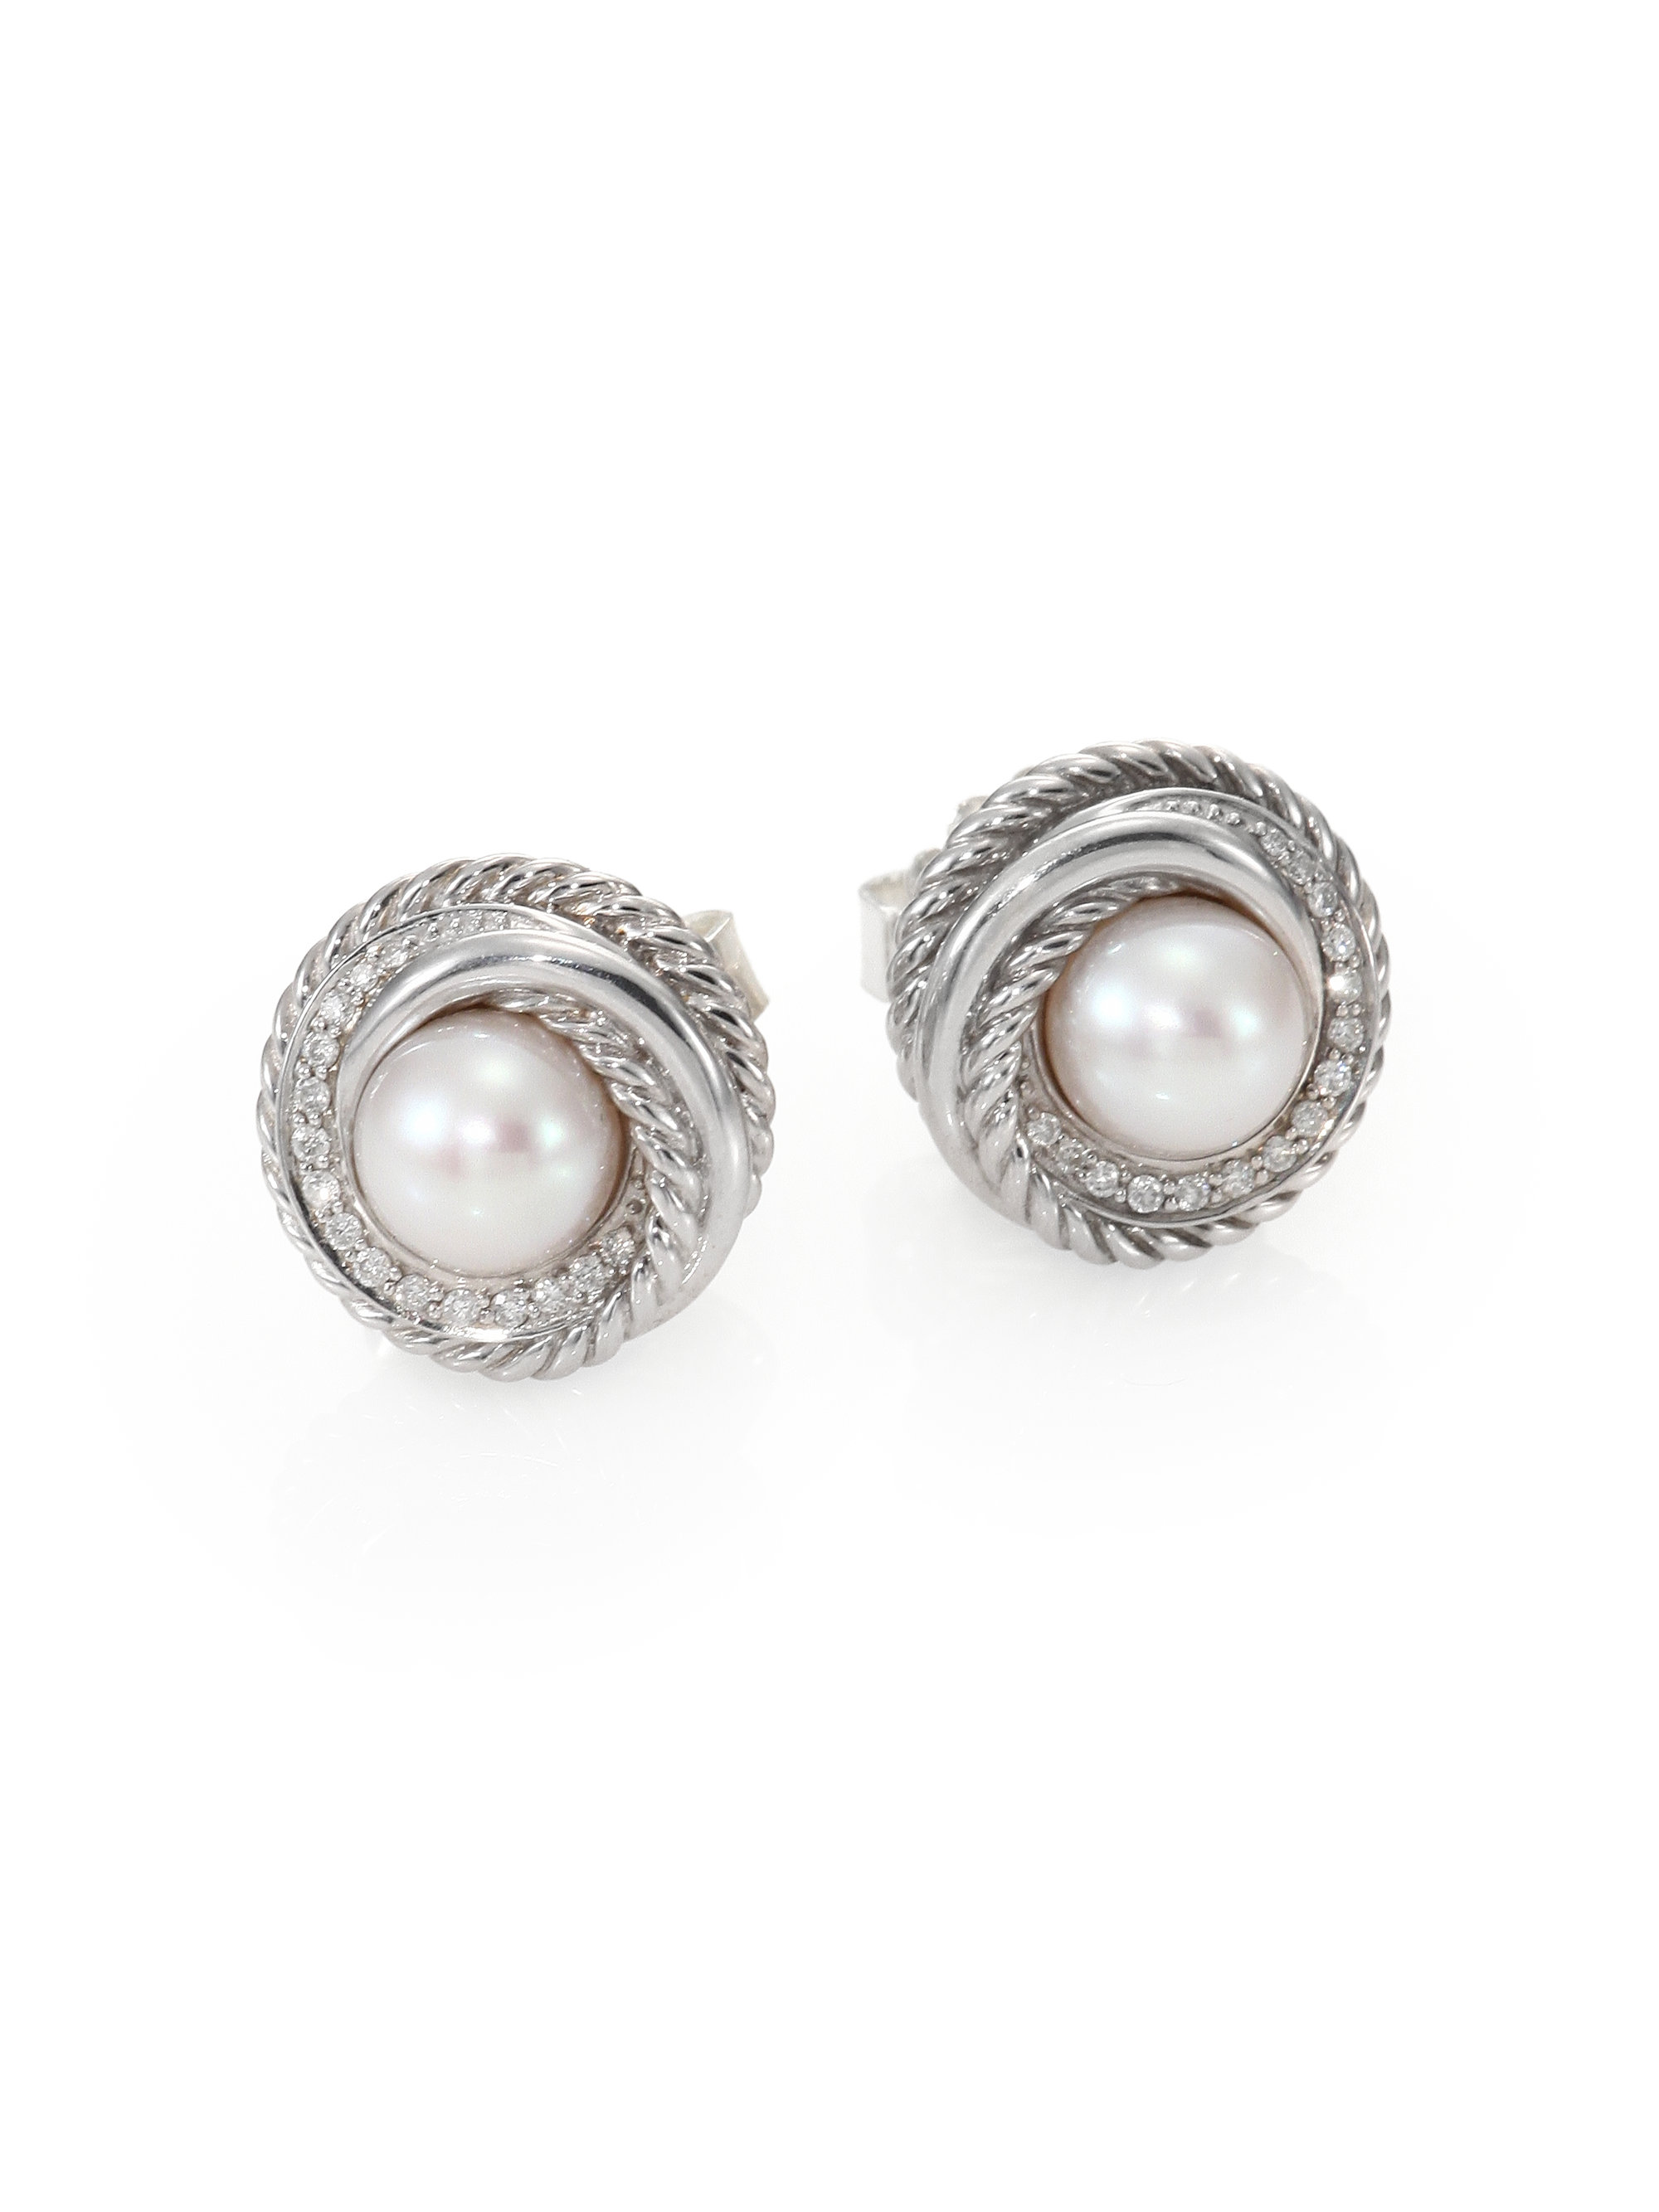 David Yurman 6mm7mm Pearl Diamond Sterling Silver Button Earrings in ...